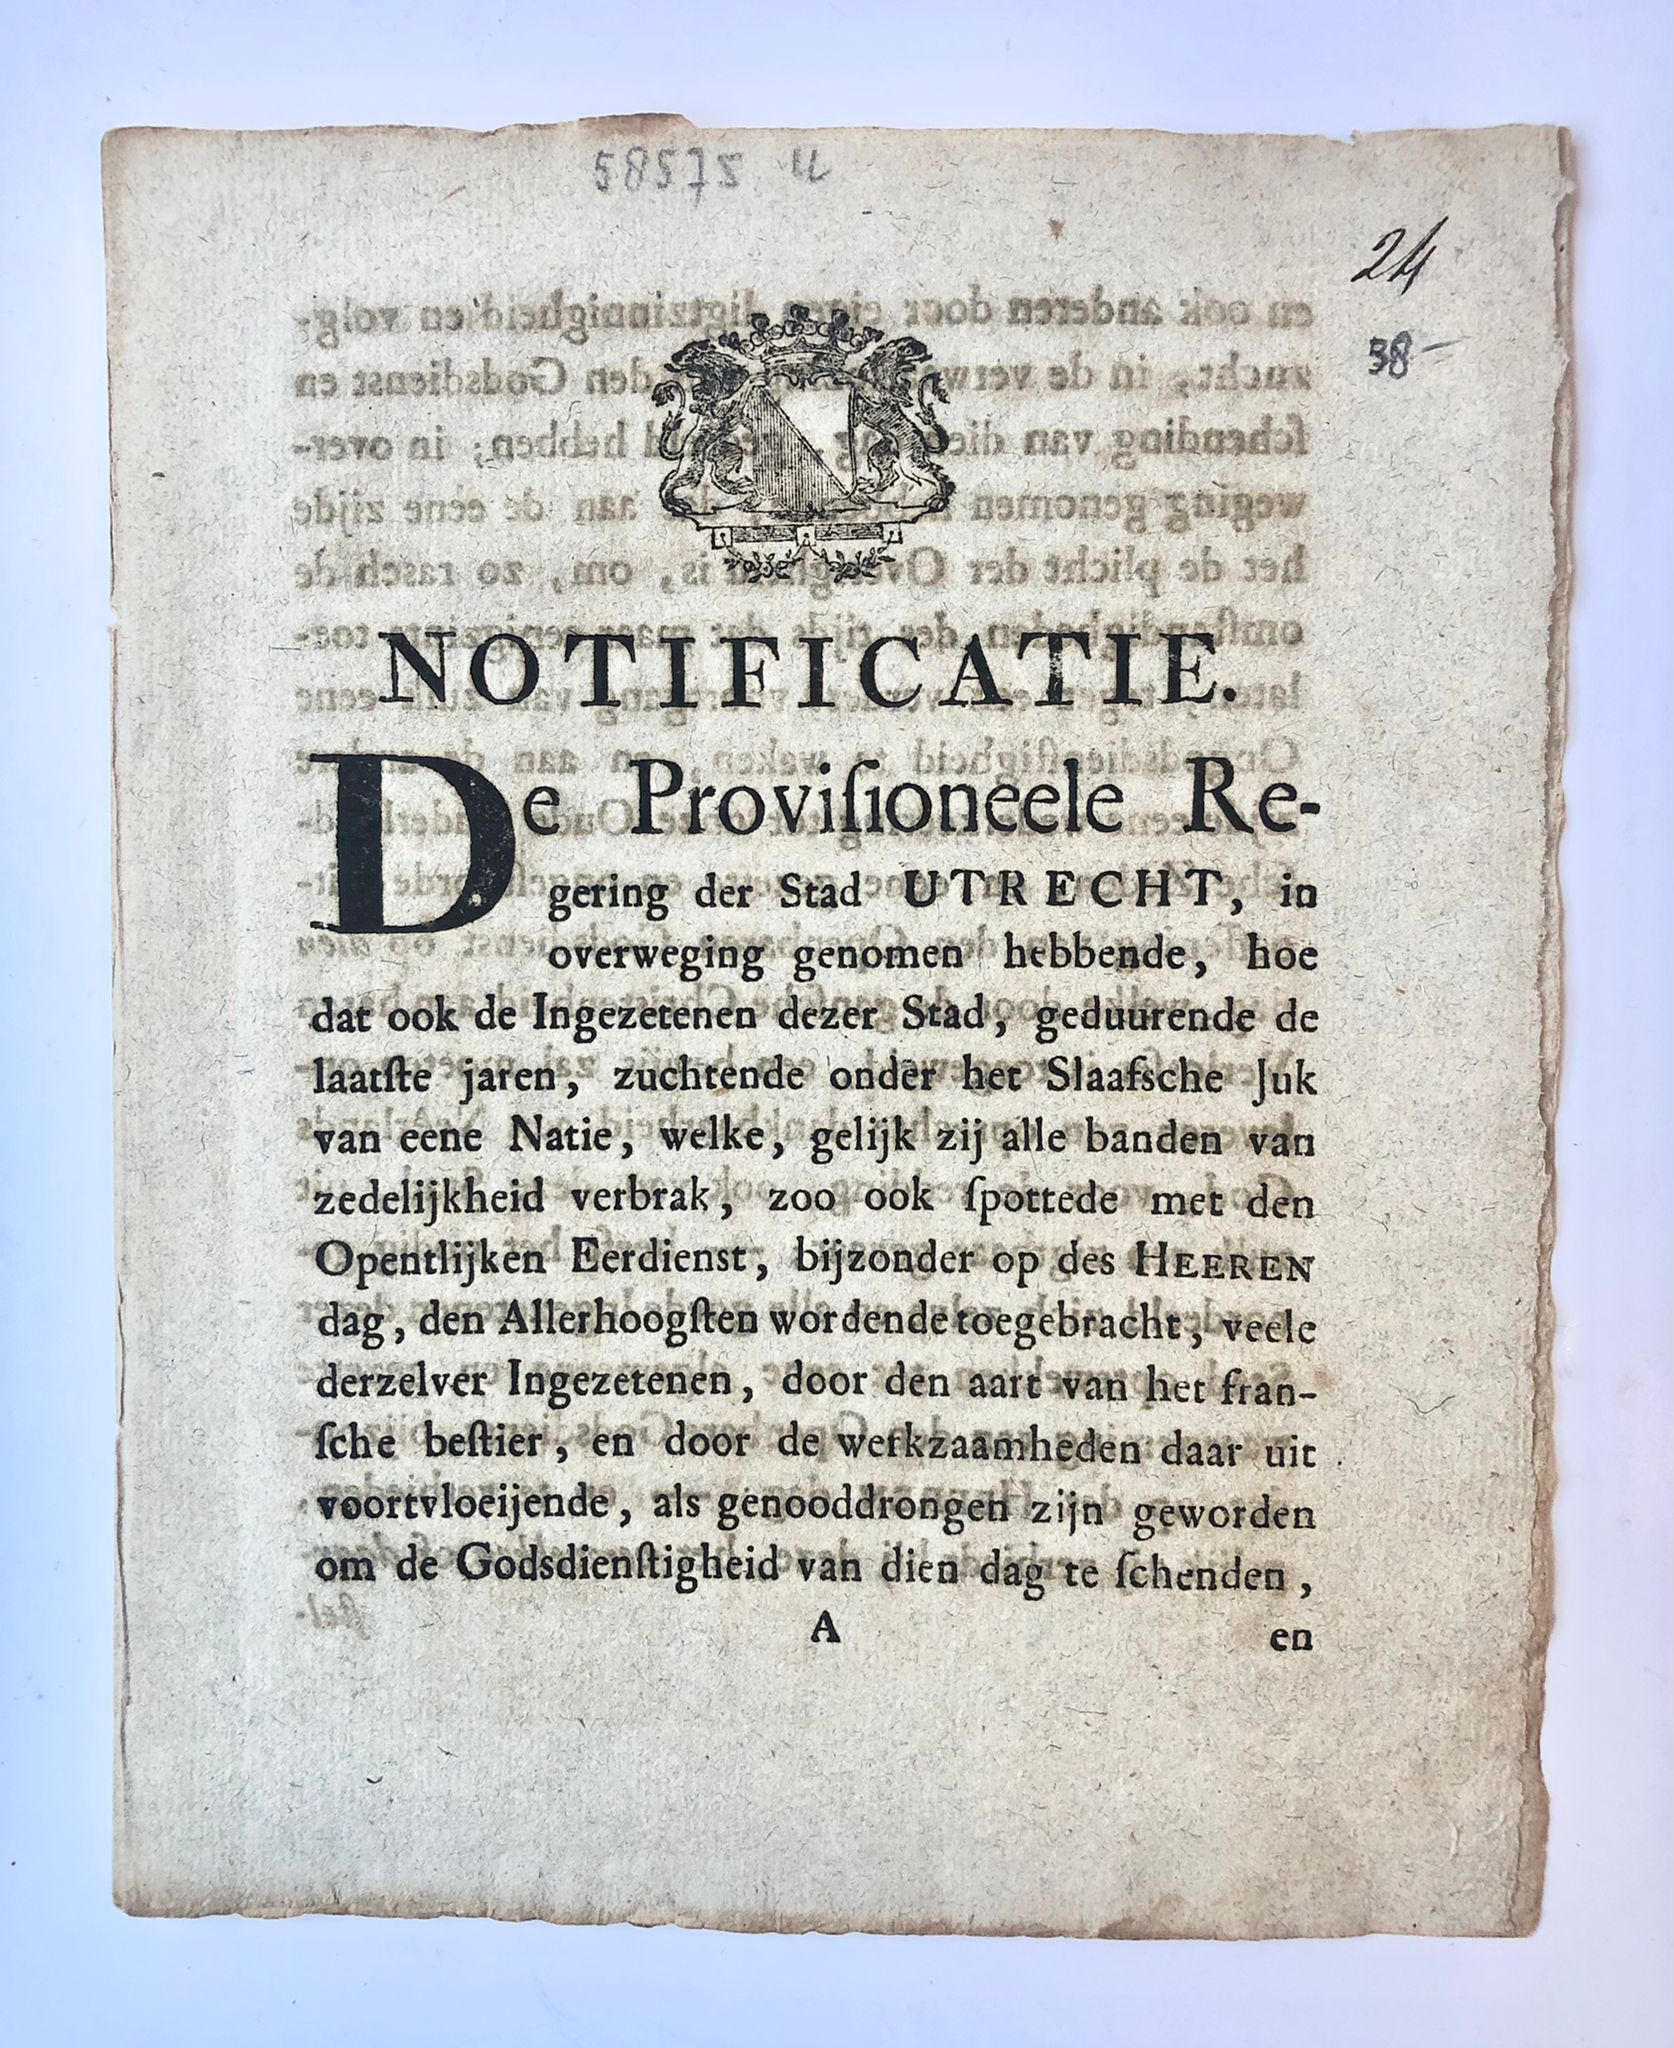 [Sunday rest 1814, zondagsrust] Notificatie van de Prov. Regering van de stad Utrecht, d.d. 10-1-1814, betr. zondagsrust. 4°, gedrukt, (4) pag.